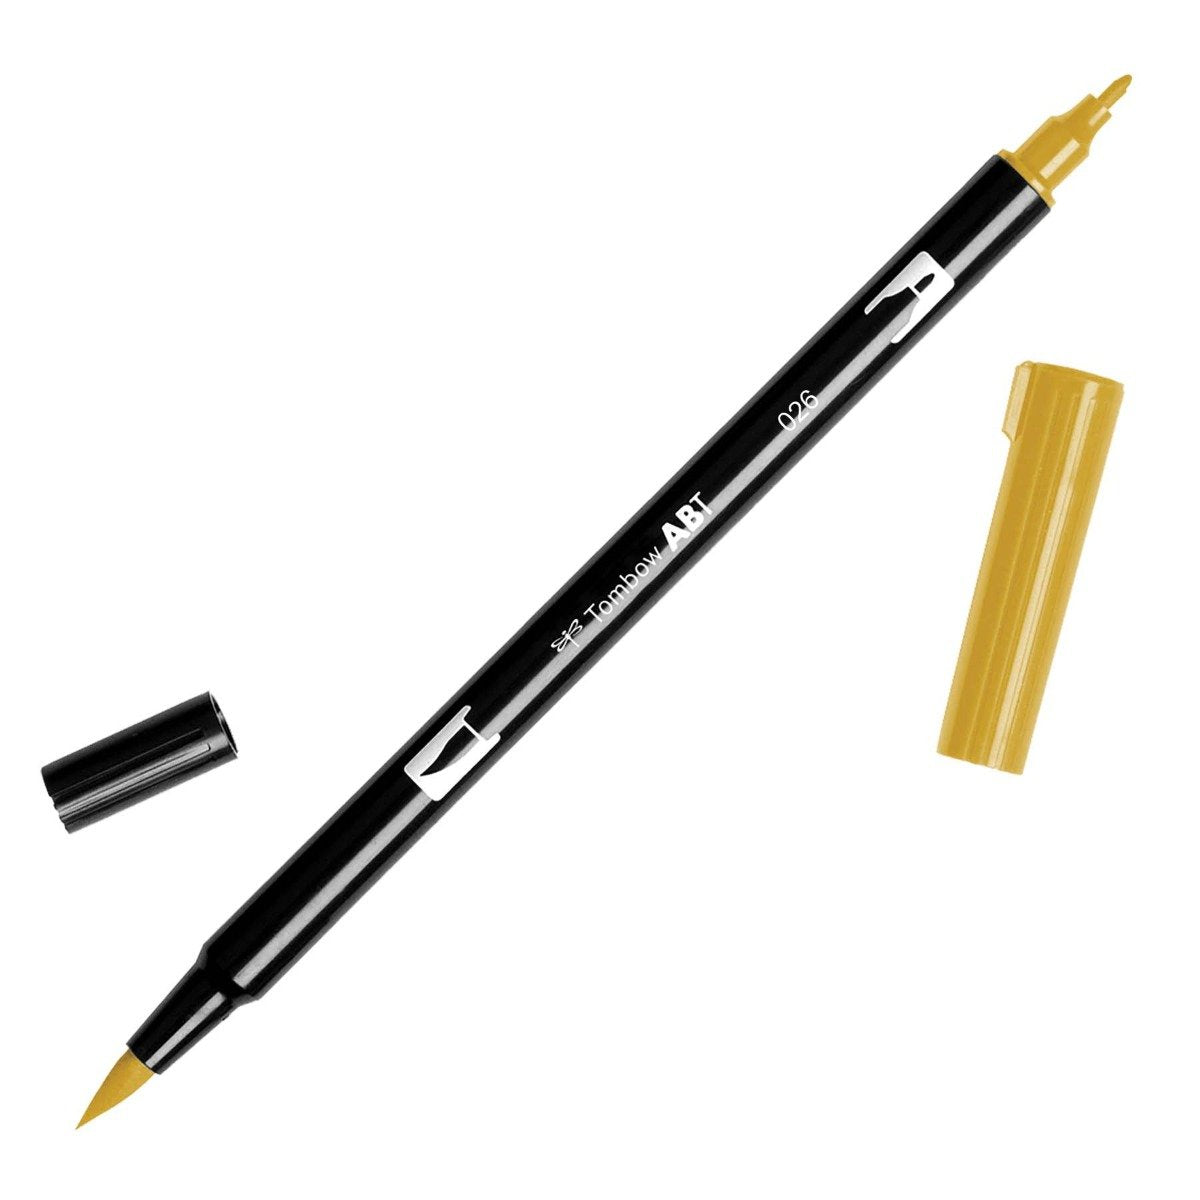 Tombow Dual Tip Brush Pens– Let's Make Art